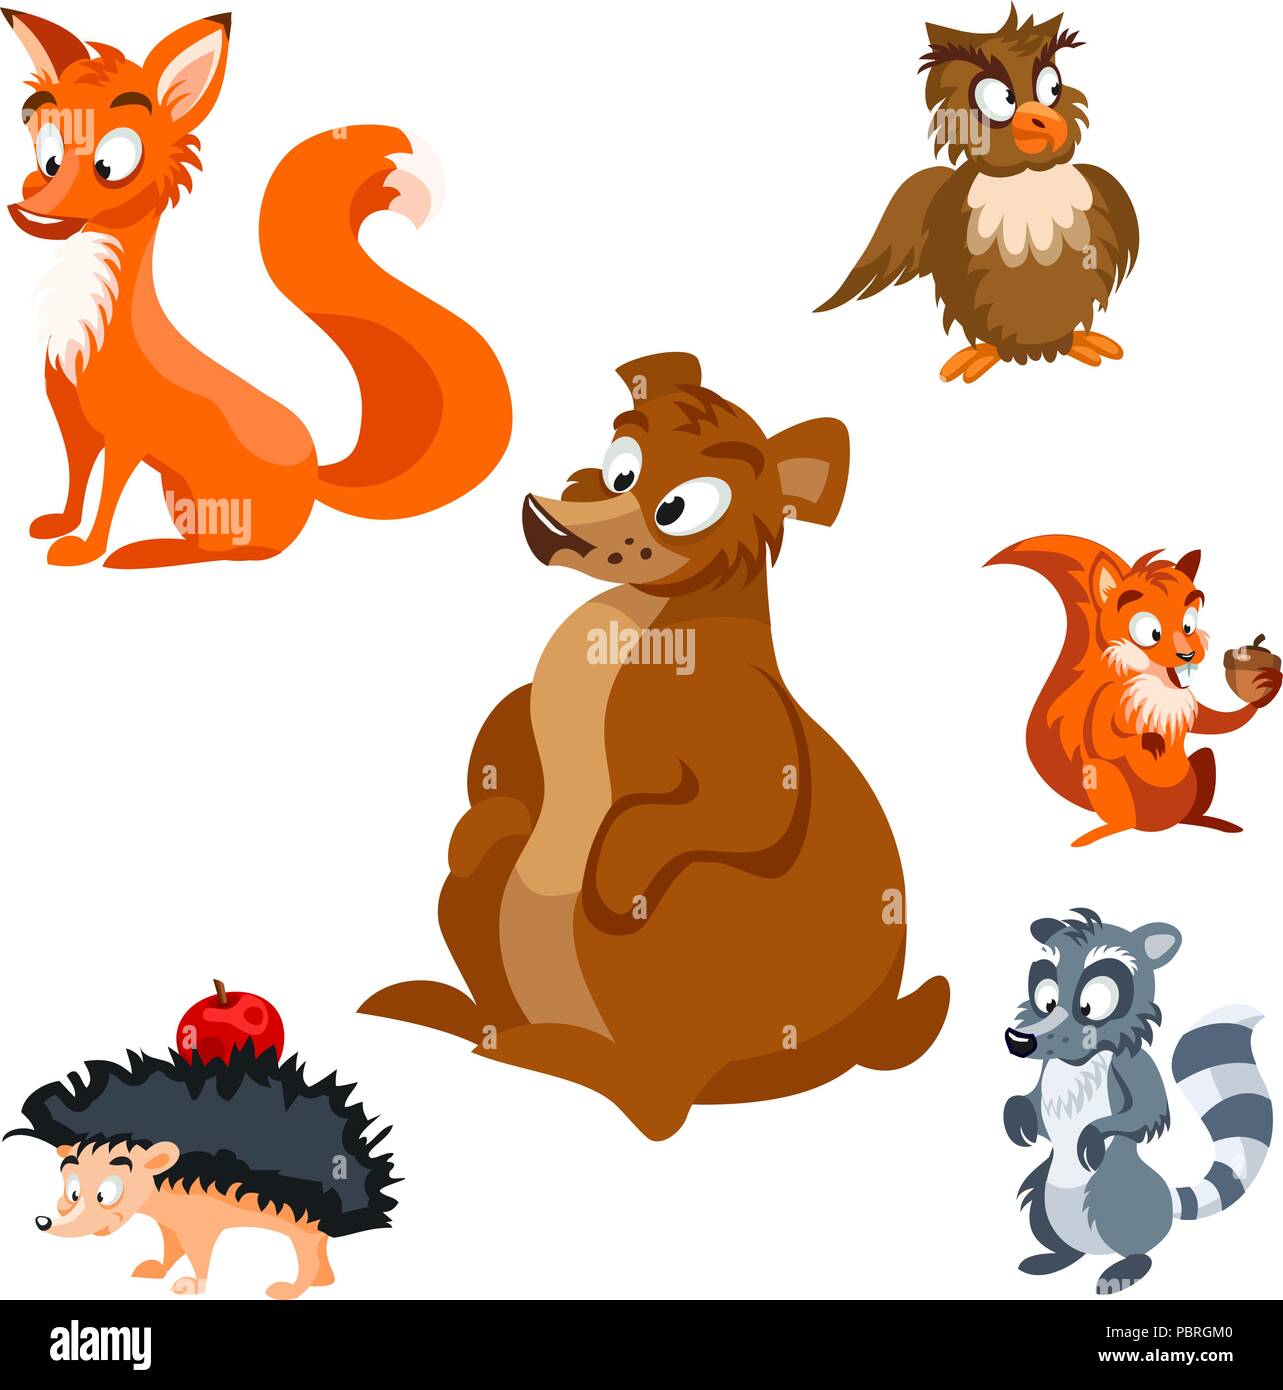 Cinco series de dibujos animados que promueven el amor por los animales   HAZTE ECO